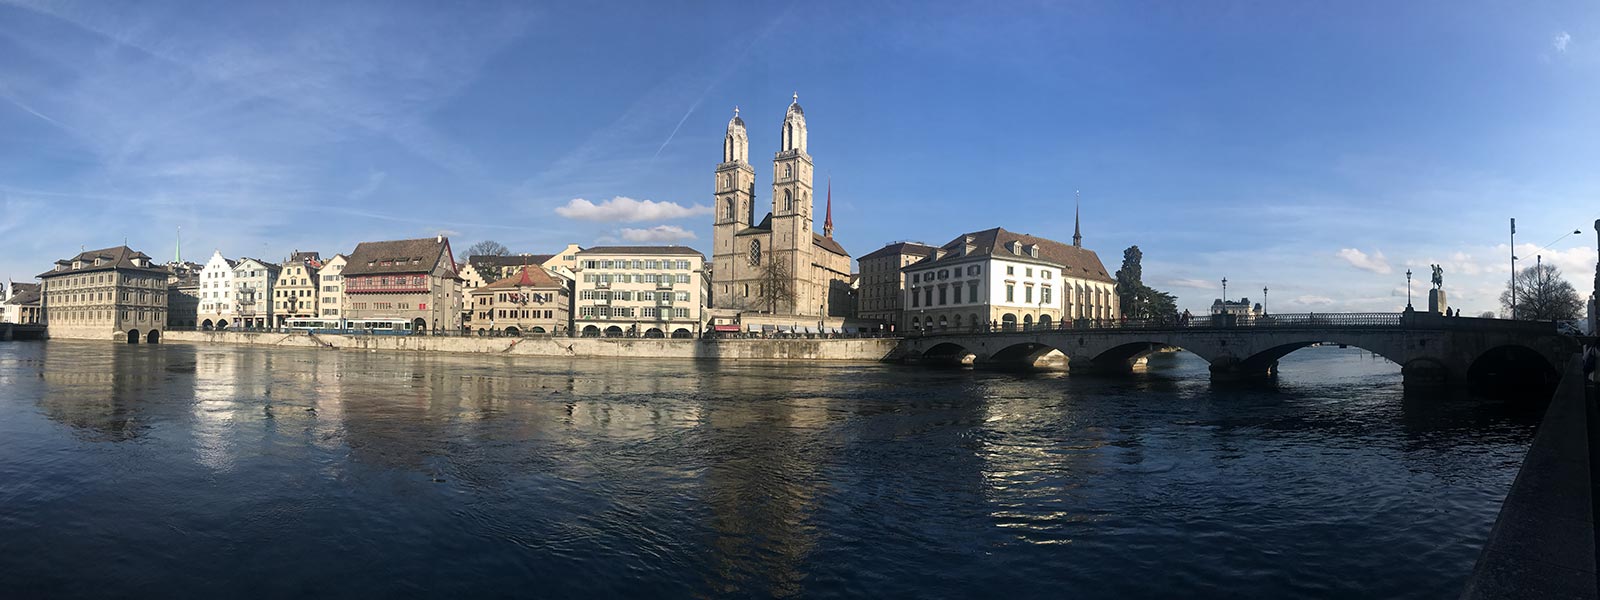 A bridge over Limmat River in Zurich, Switzerland. Cheltenham, Europe & Mum's 60th summed up in photos